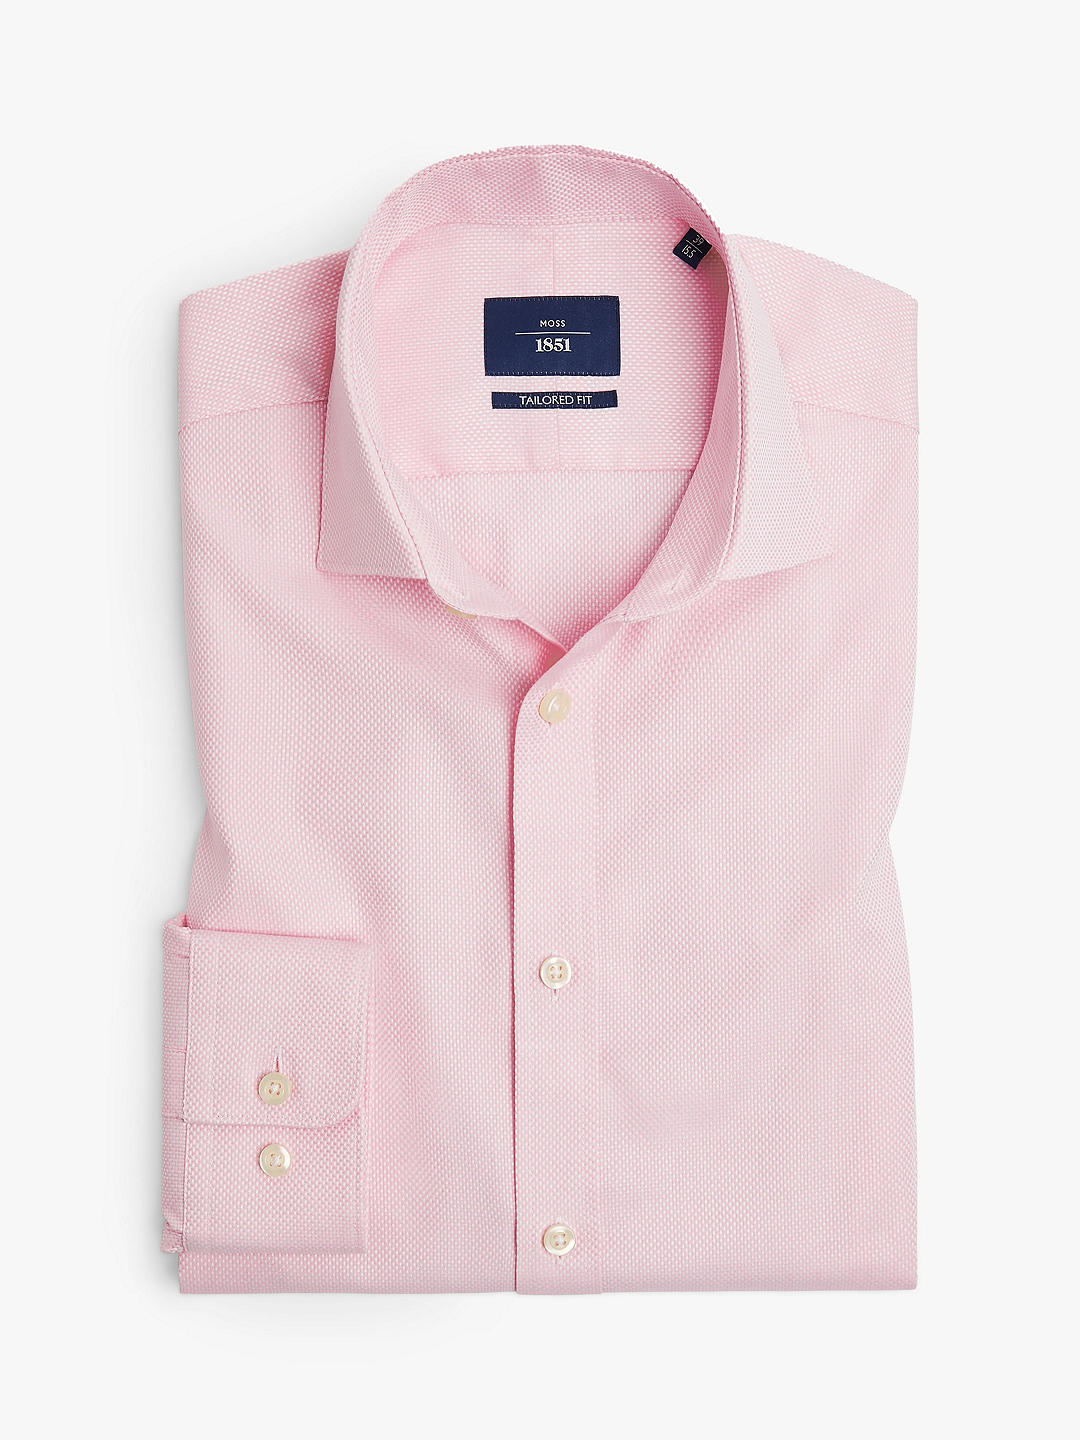 Рубашка добби из хлопка приталенного кроя с одинарными манжетами Moss 1851, розовая эластичная рубашка приталенного кроя moss 1851 черная